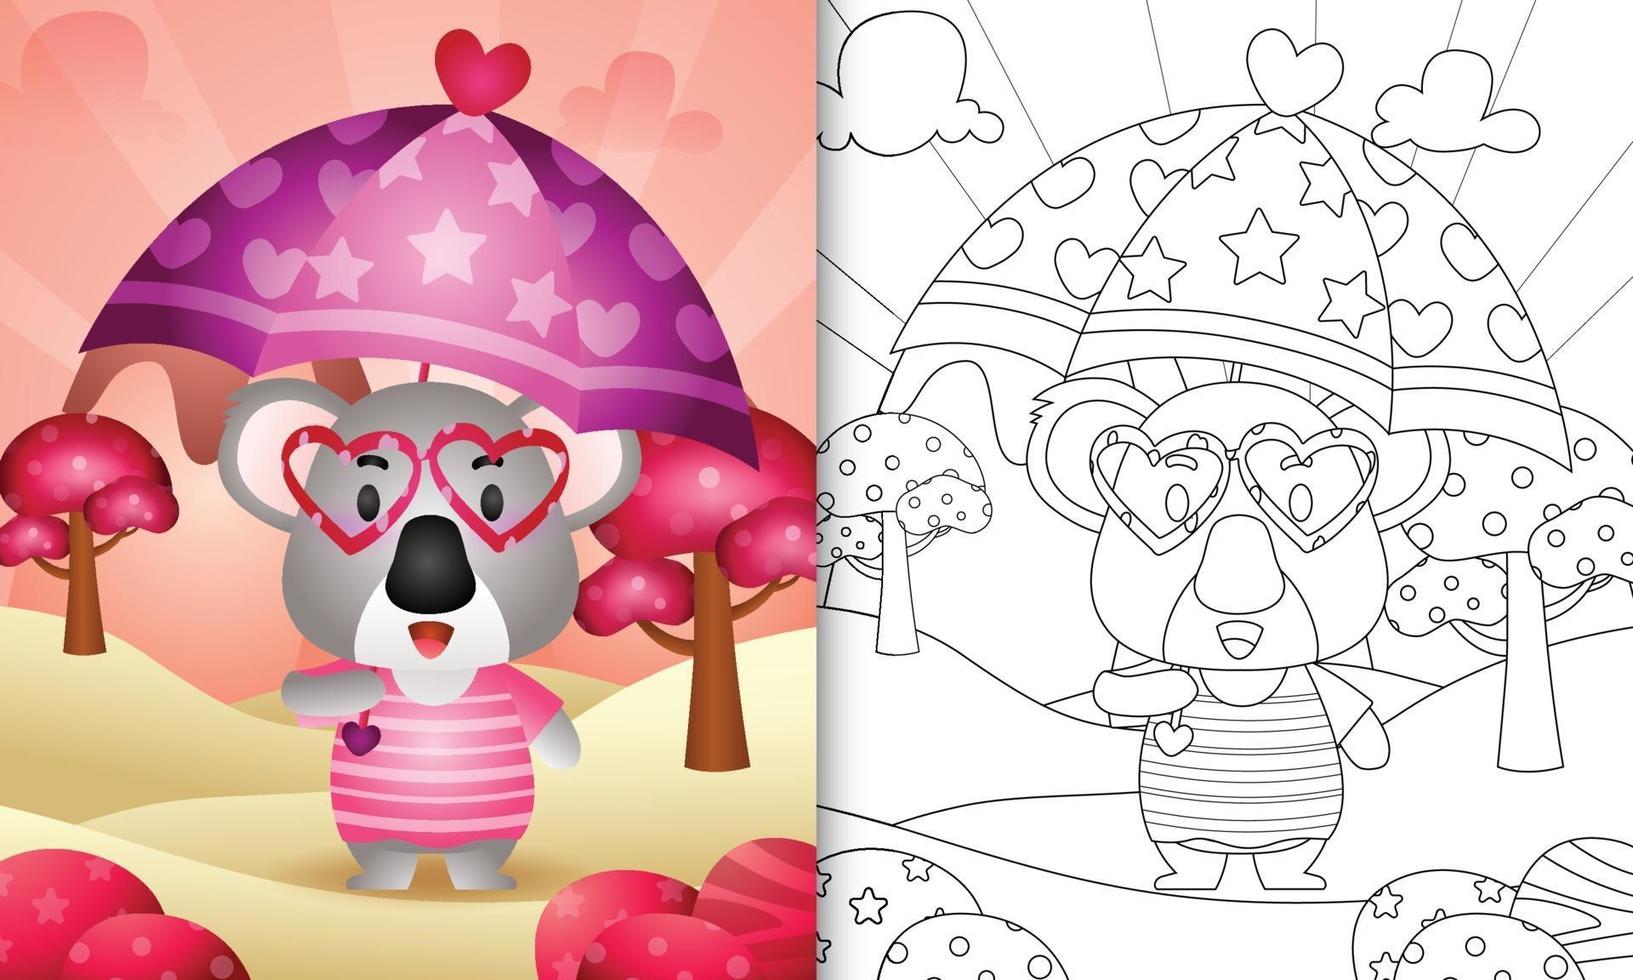 livro de colorir para crianças com um coala fofo segurando guarda-chuva com o tema do dia dos namorados vetor